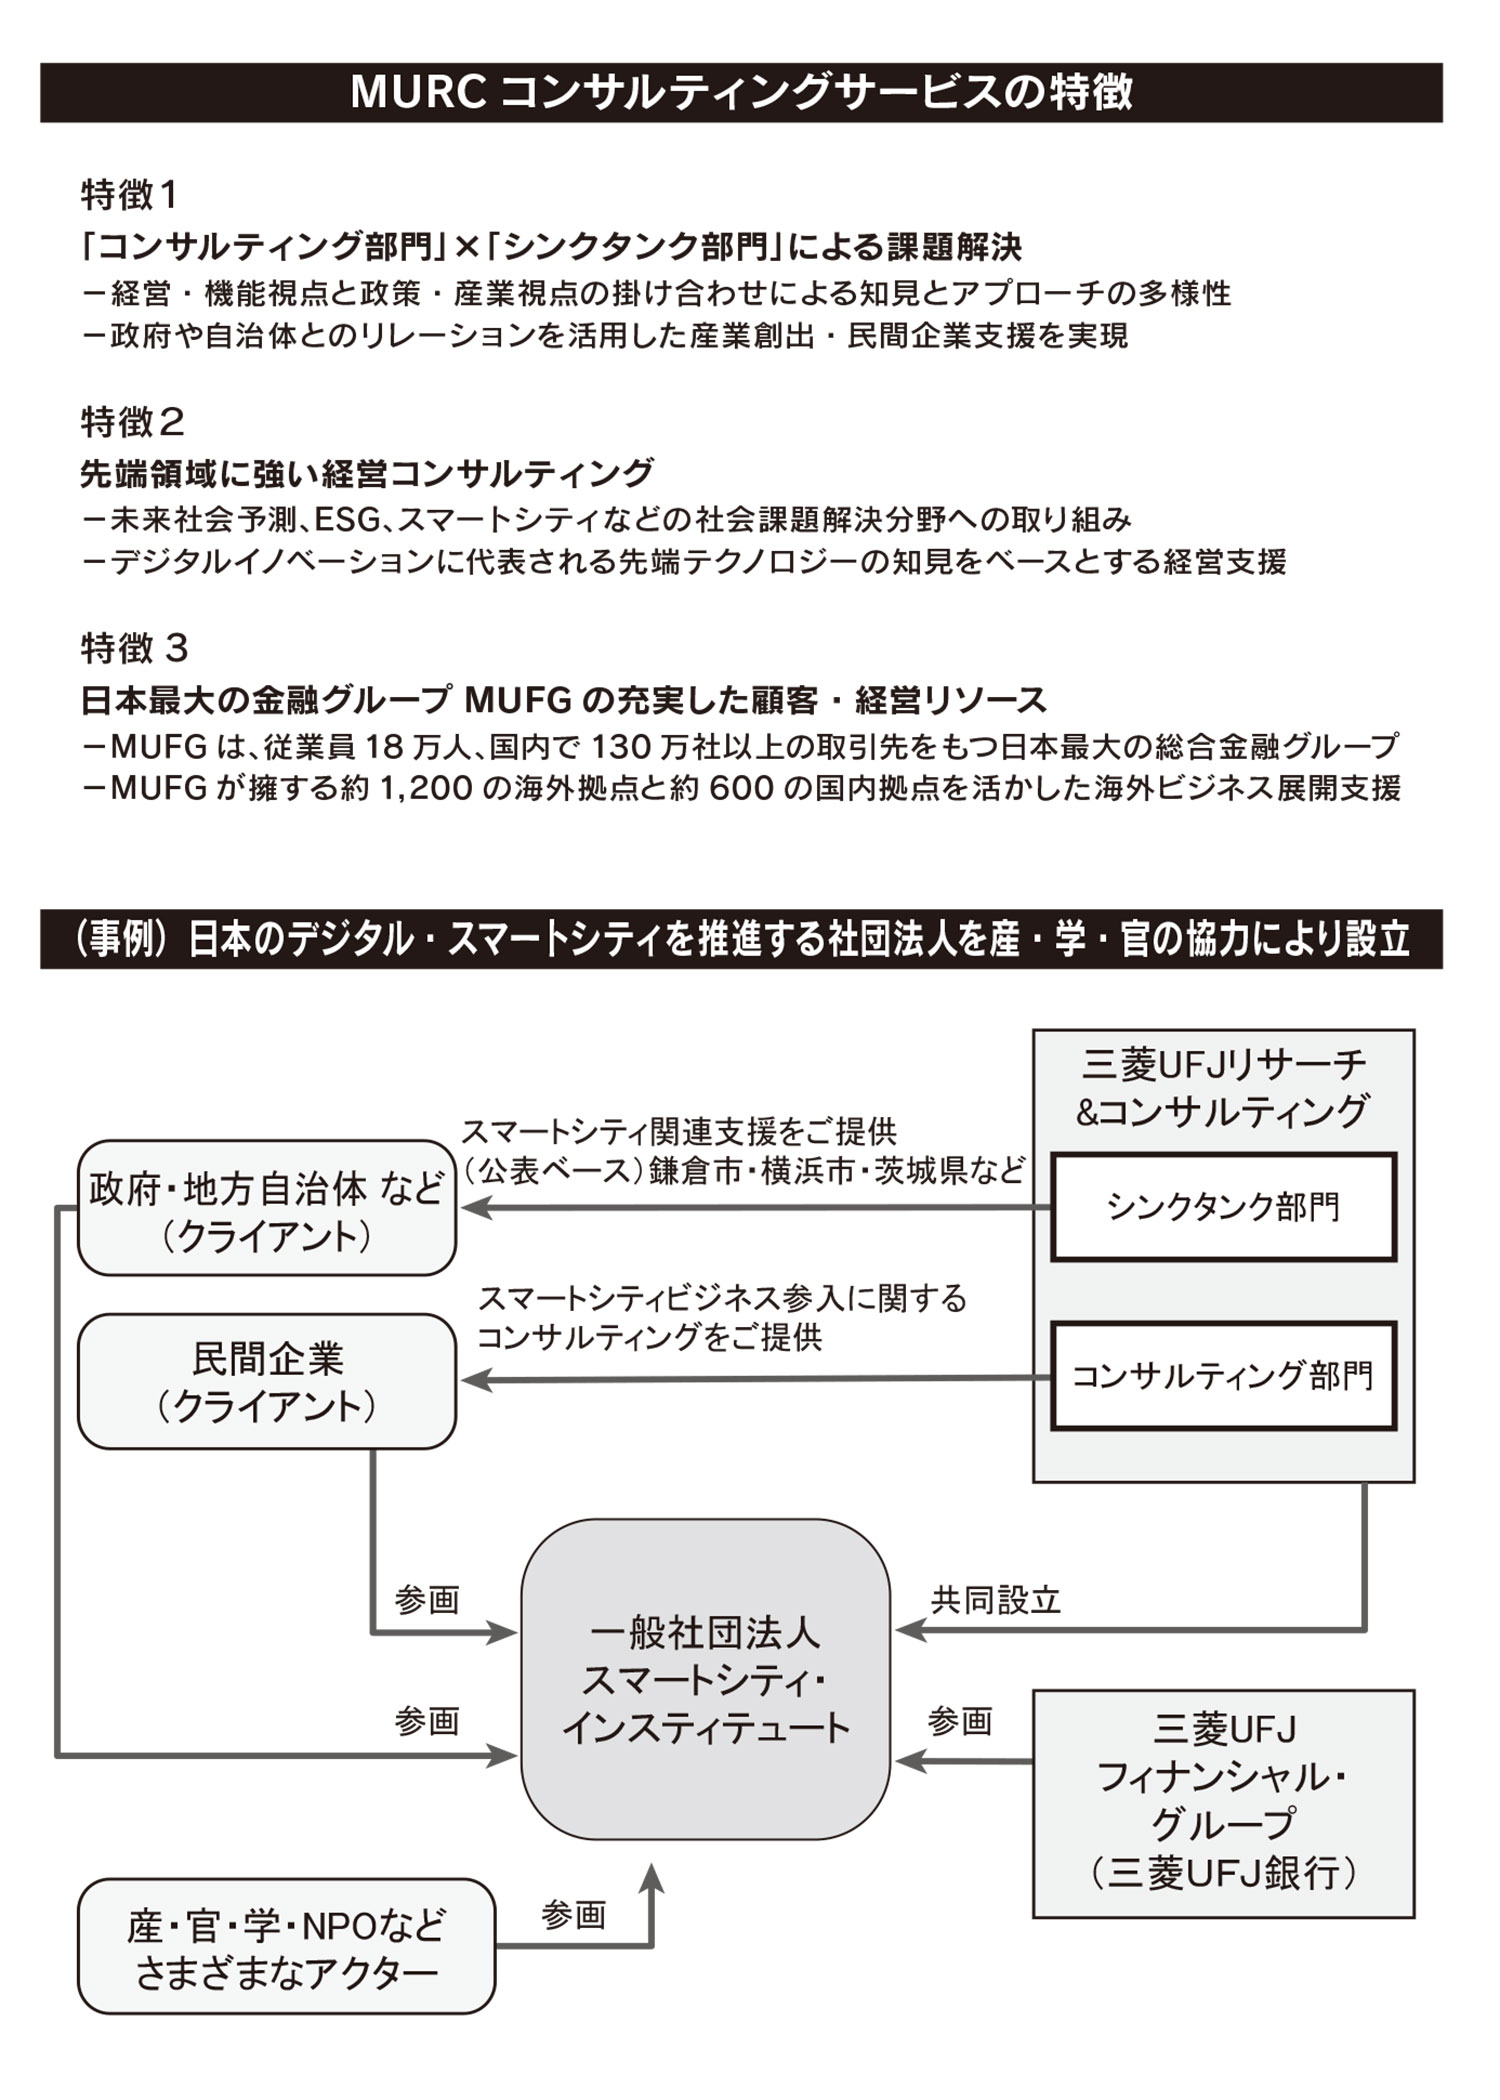 MURC コンサルティングサービスの特徴 （事例）日本のデジタル・スマートシティを推進する社団法人を産・学・官の協力により設立